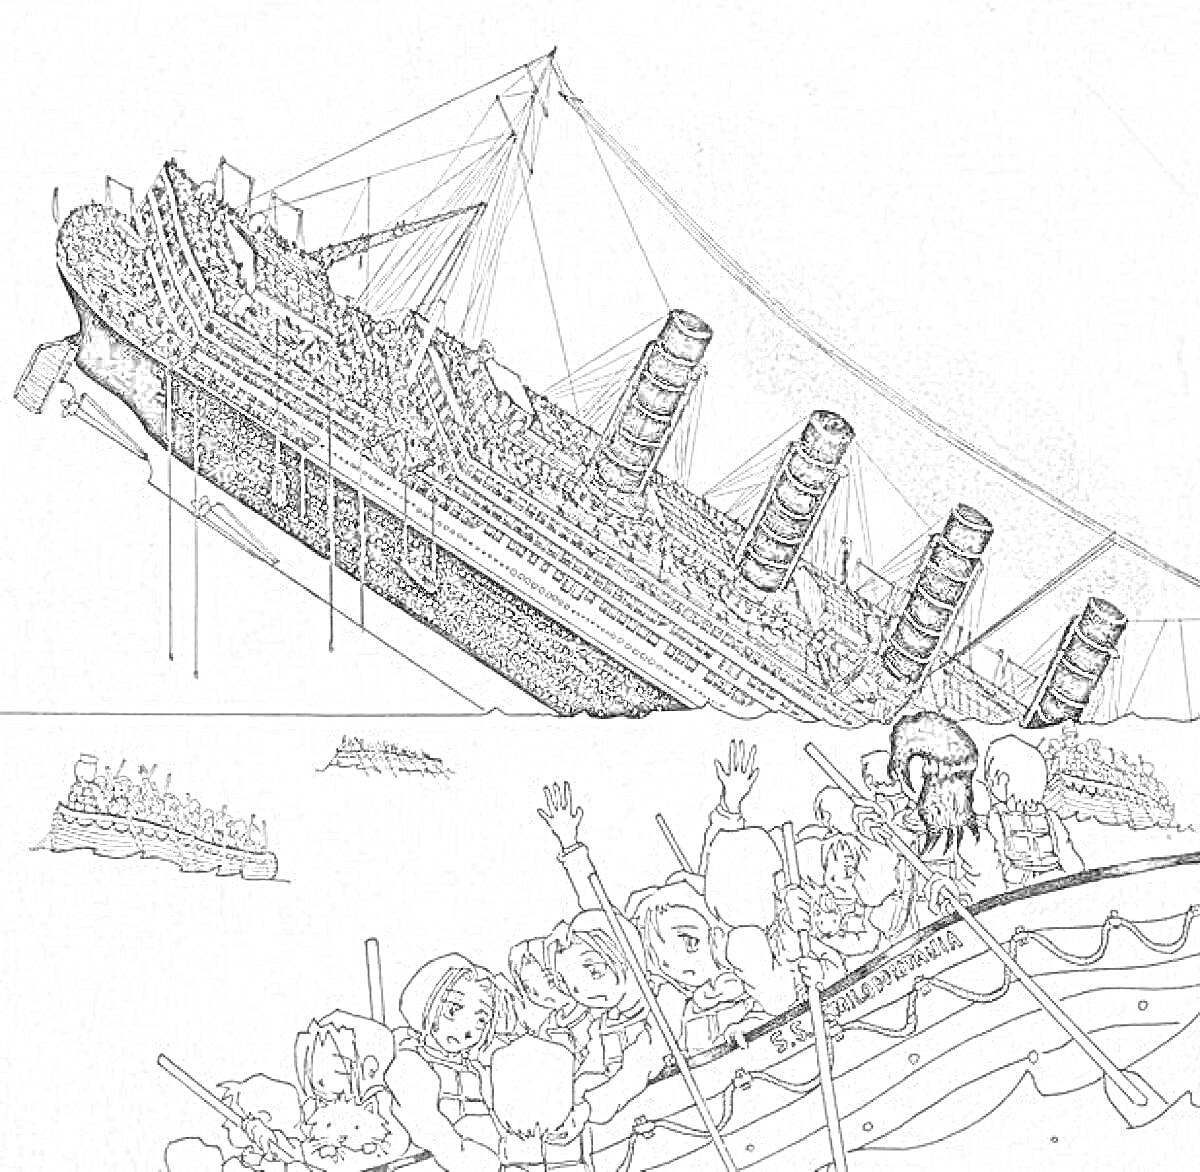 Раскраска Кораблекрушение «Лузитании» с тонущим кораблем, спасательными шлюпками и пассажирами